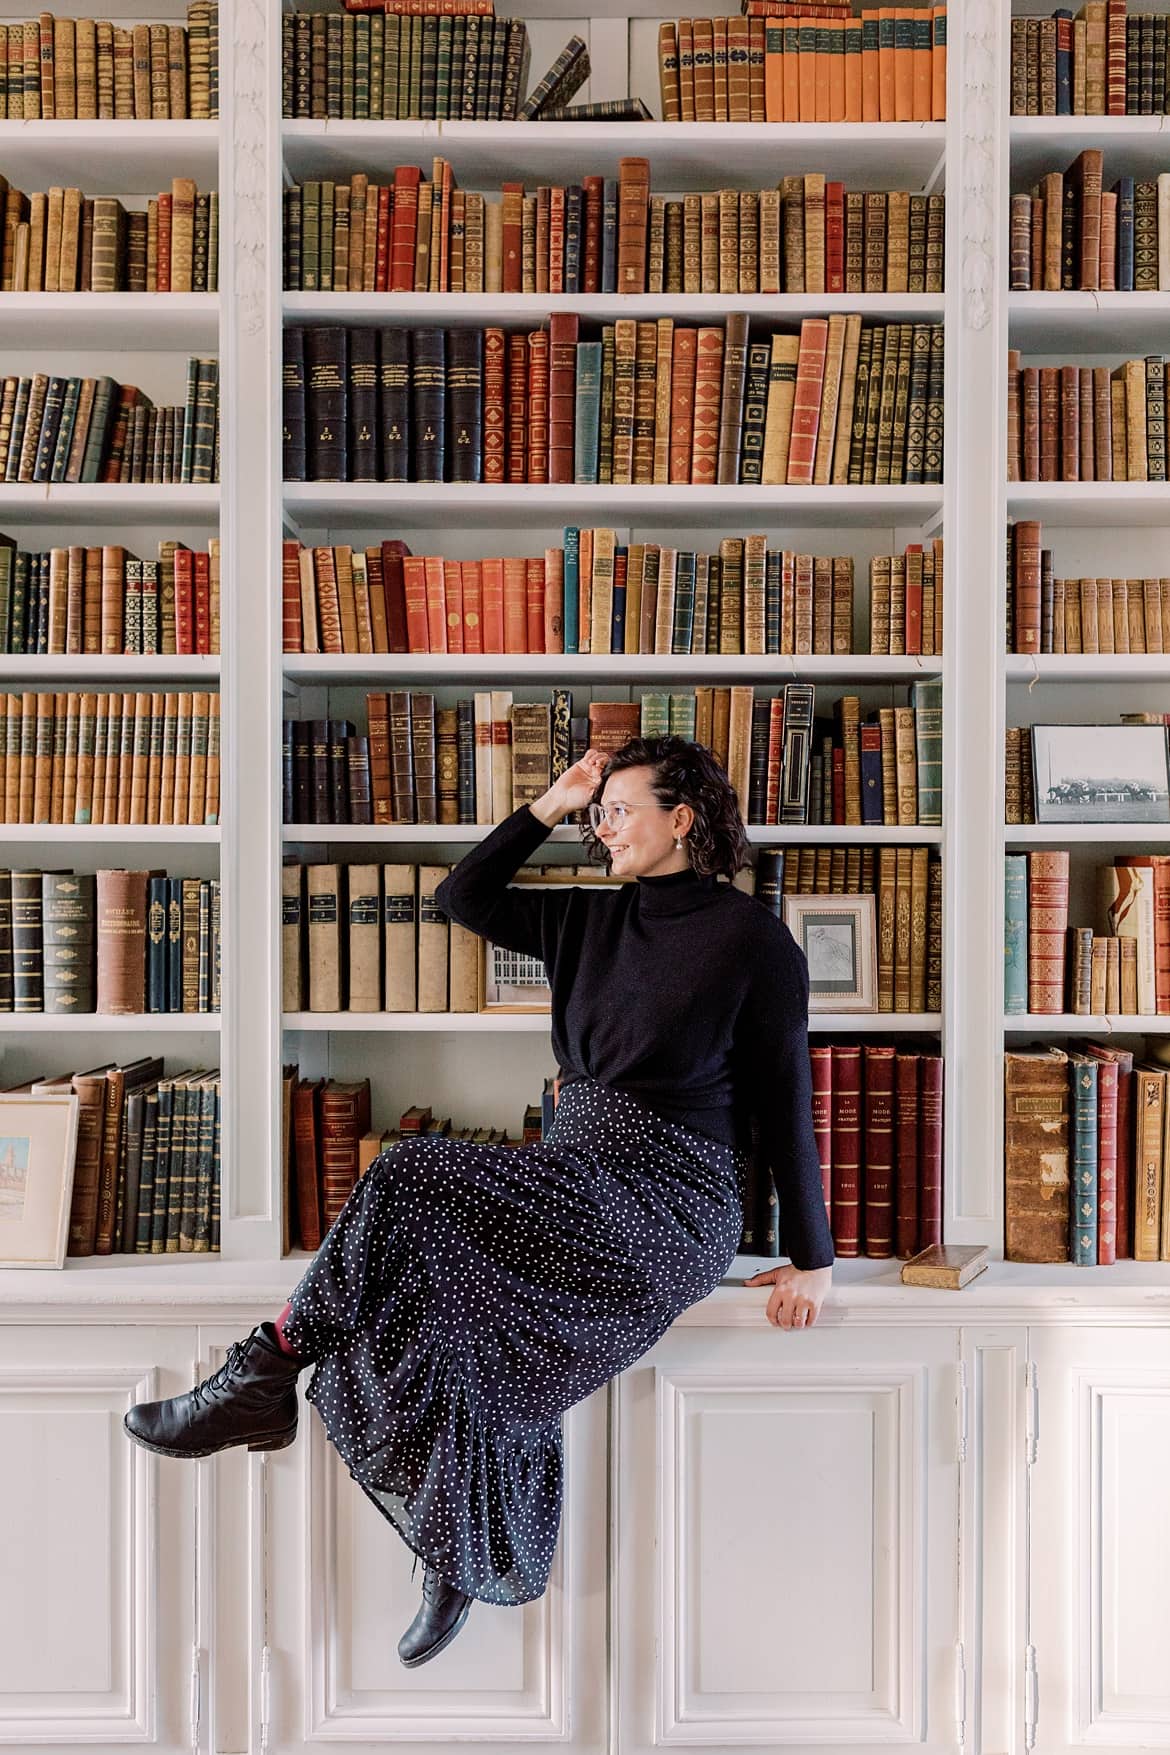 Frau mit dunklen, lockigen Haaren sitzt sehr vor einer Bücherwand in einer Bibliothek. Sie trägt ein schwarzes Kleid und einen schwarzen Pullover.